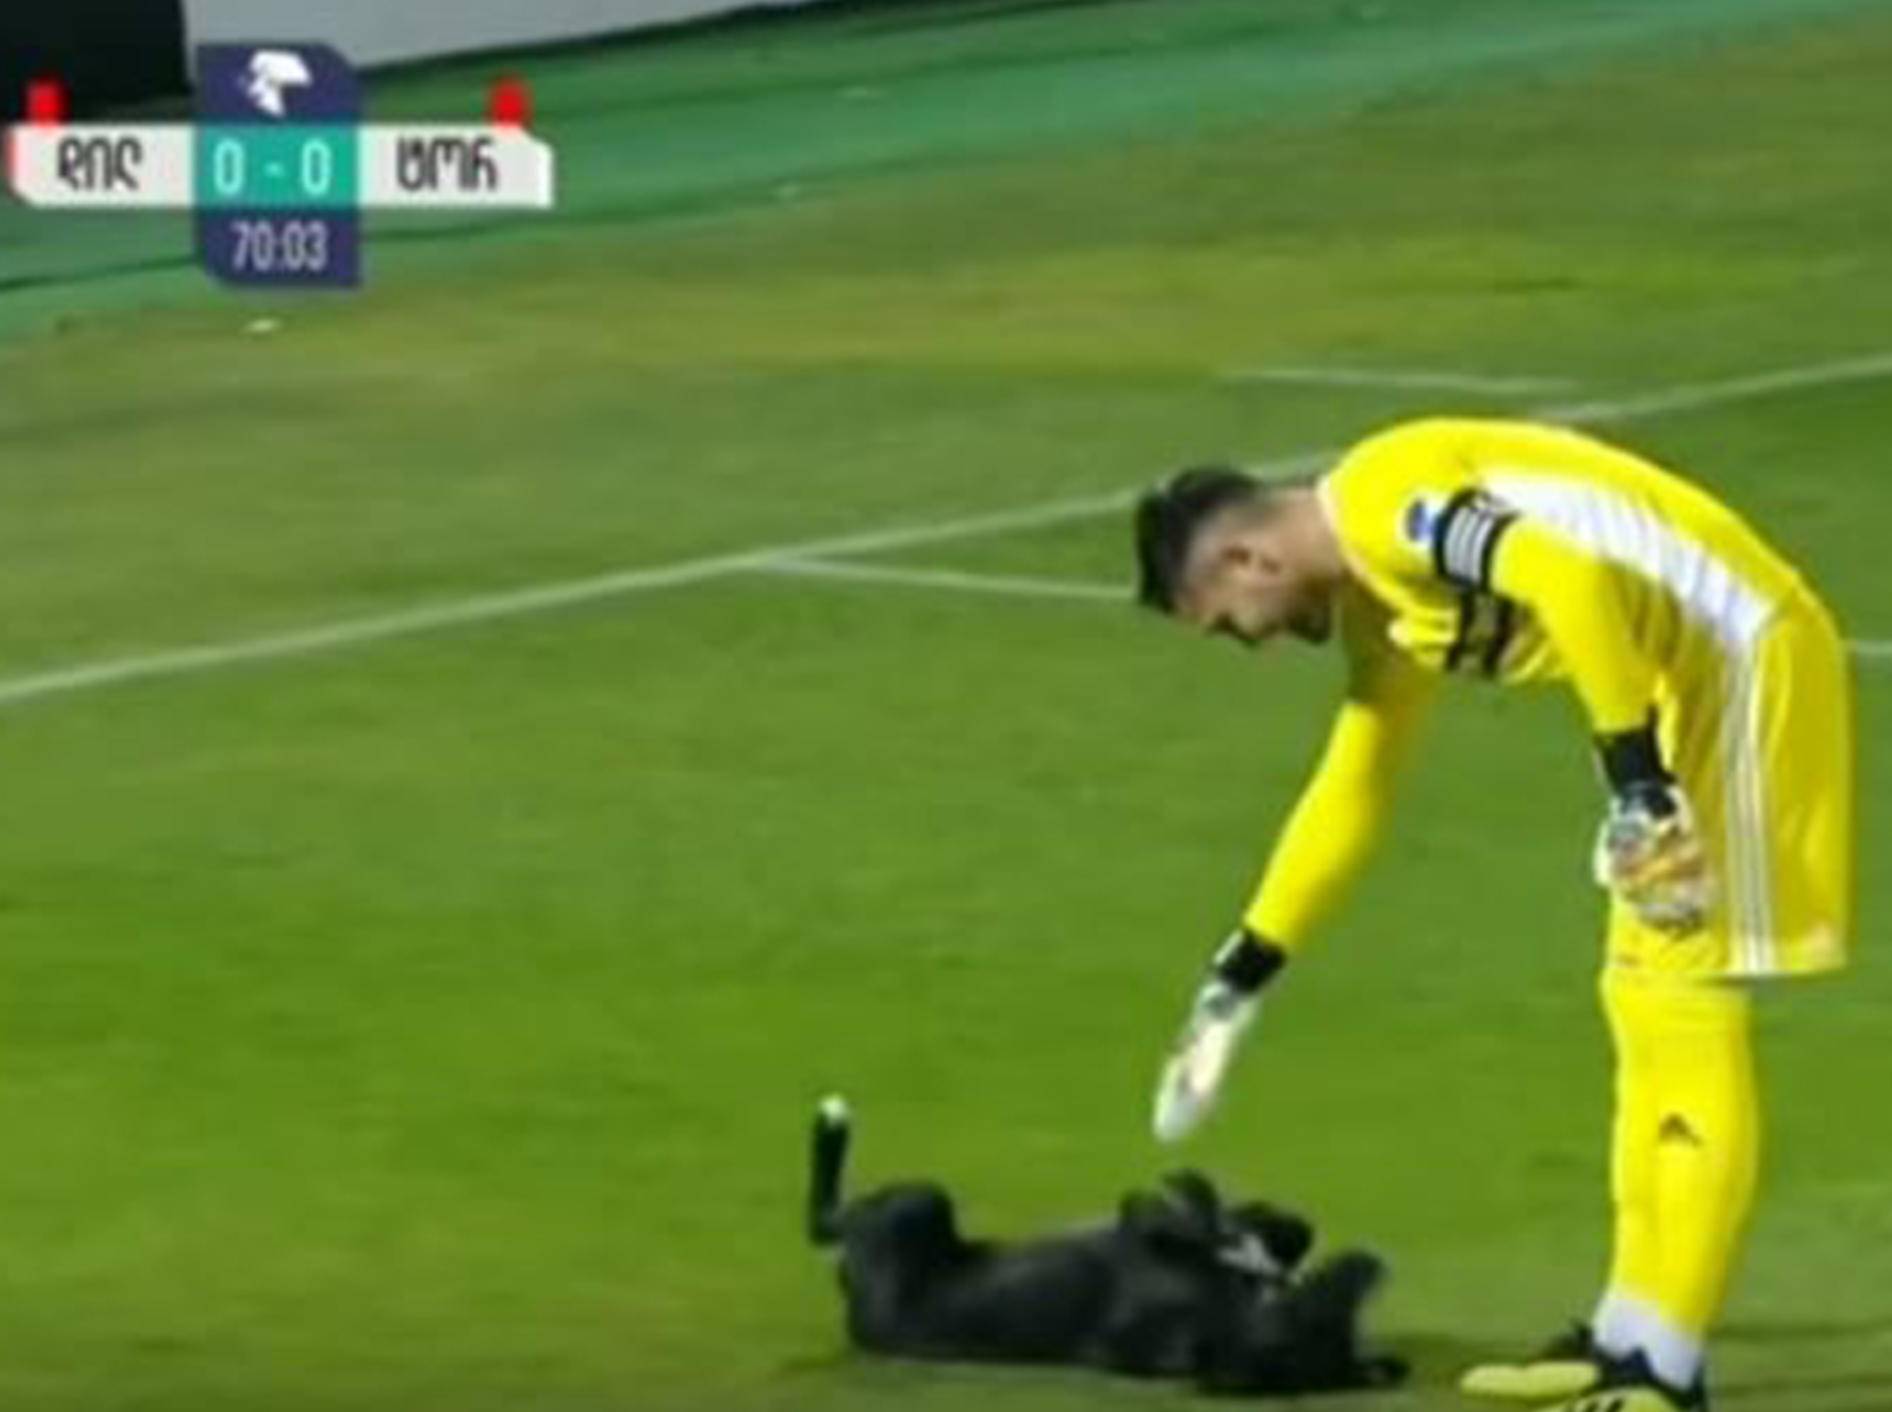 Ein Hund sorgte bei einem Fußballspiel in Georgien für eine Extrapause - Bild: YouTube / ODN